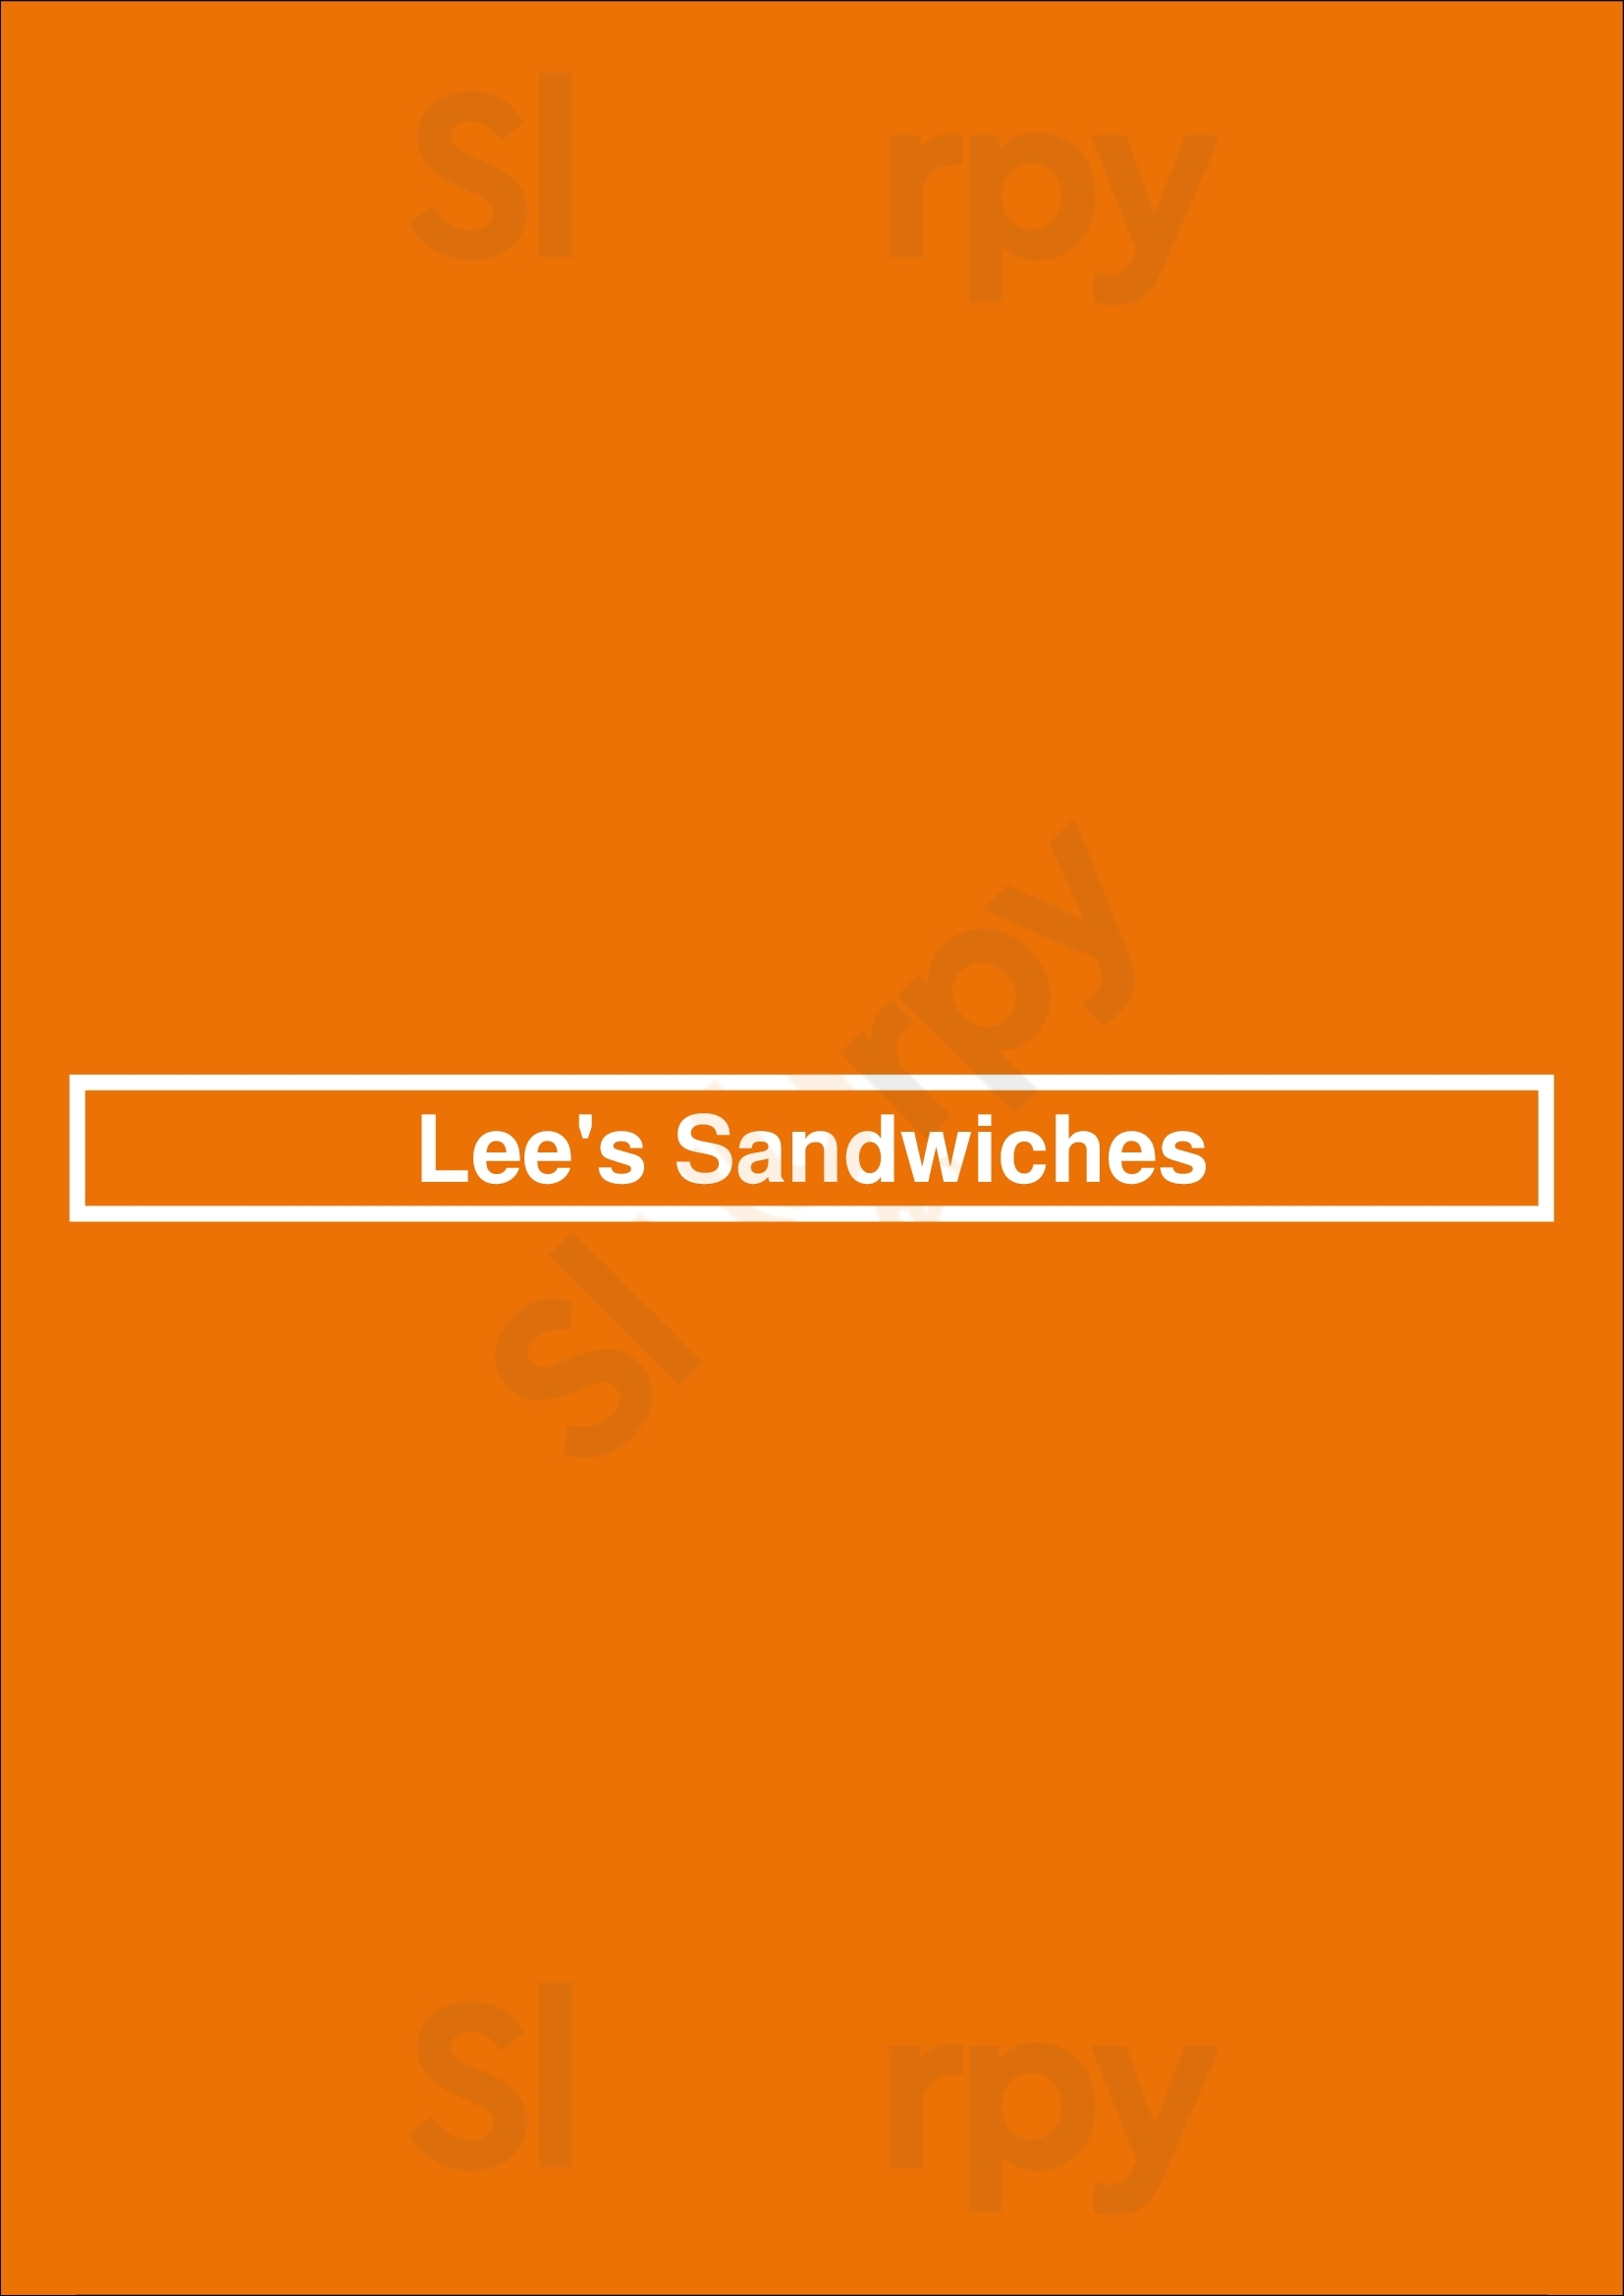 Lee's Sandwiches Las Vegas Menu - 1